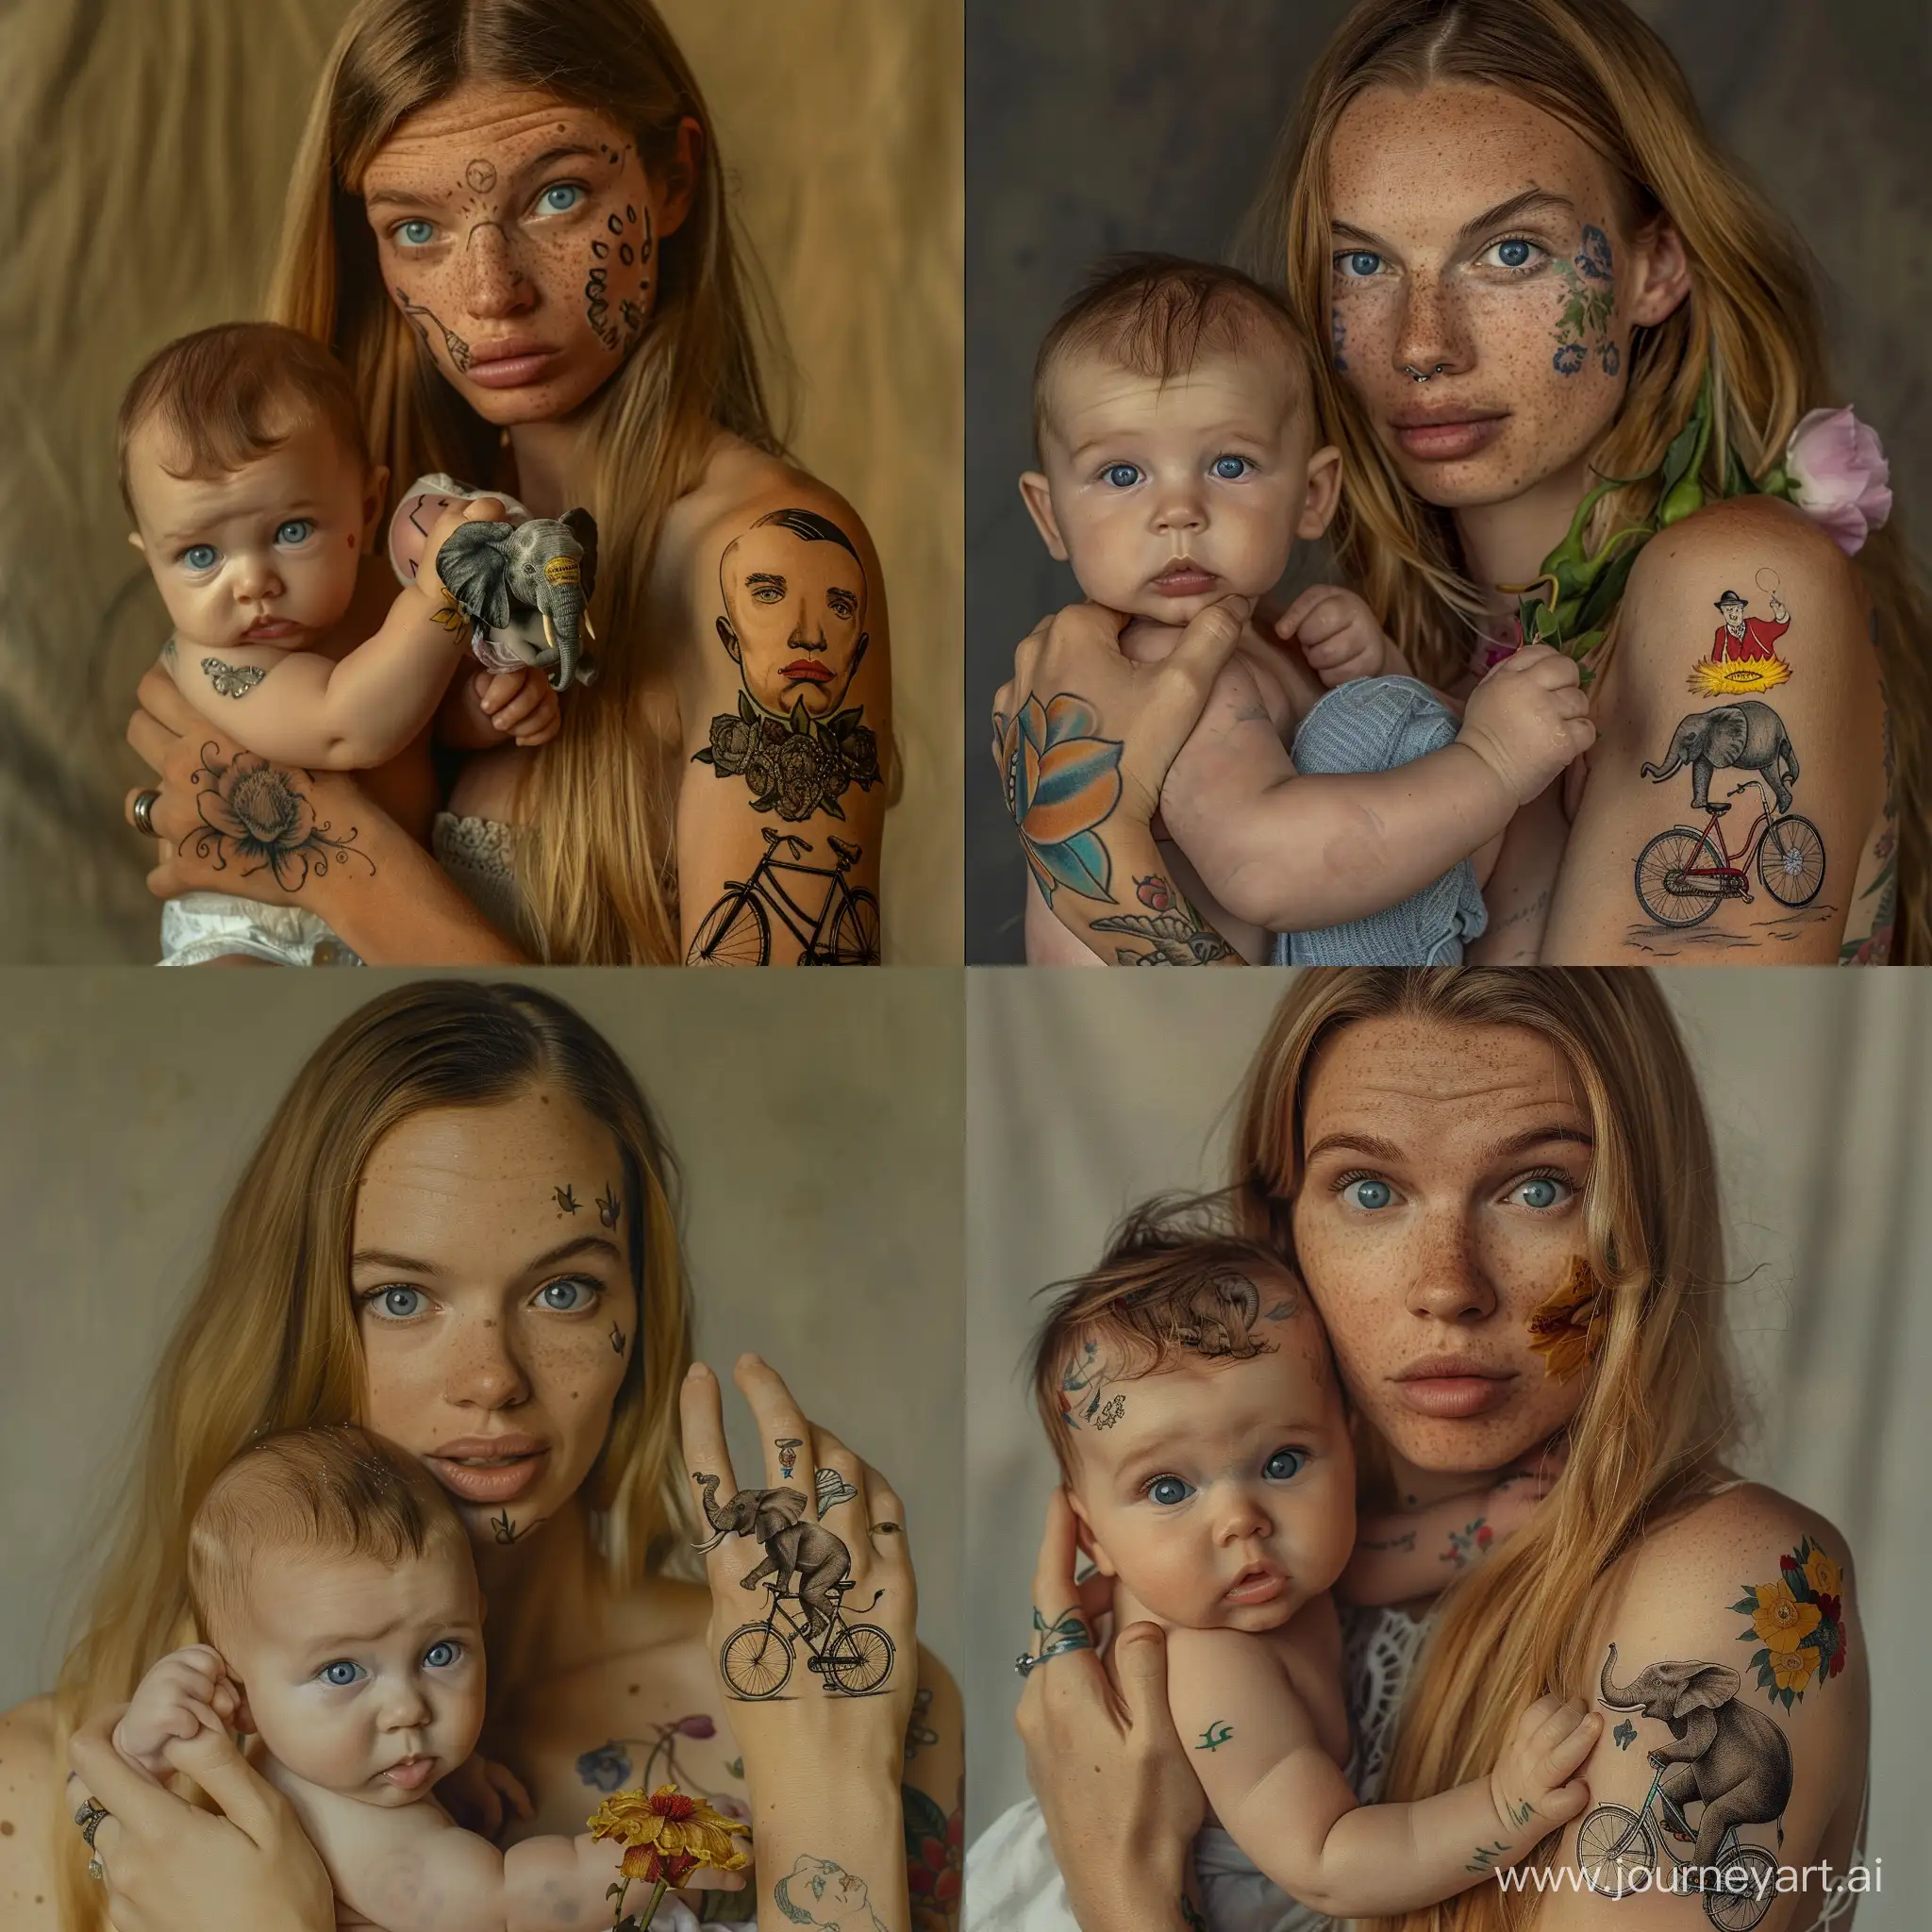 мать с младенцем на руках, младенцу 2 месяца, у двоих голубые глаза, у матери длинные светлые волосы, пухлое лицо, на правой руке две татуеровки, слон в цветах и сальвадор дали на велосипеде